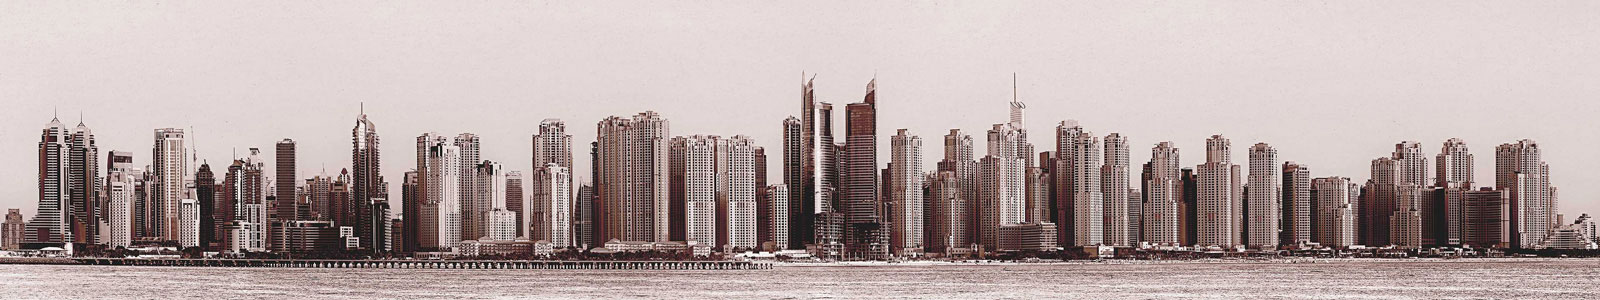 №4271 - Панорамный вид на Дубай в сепии